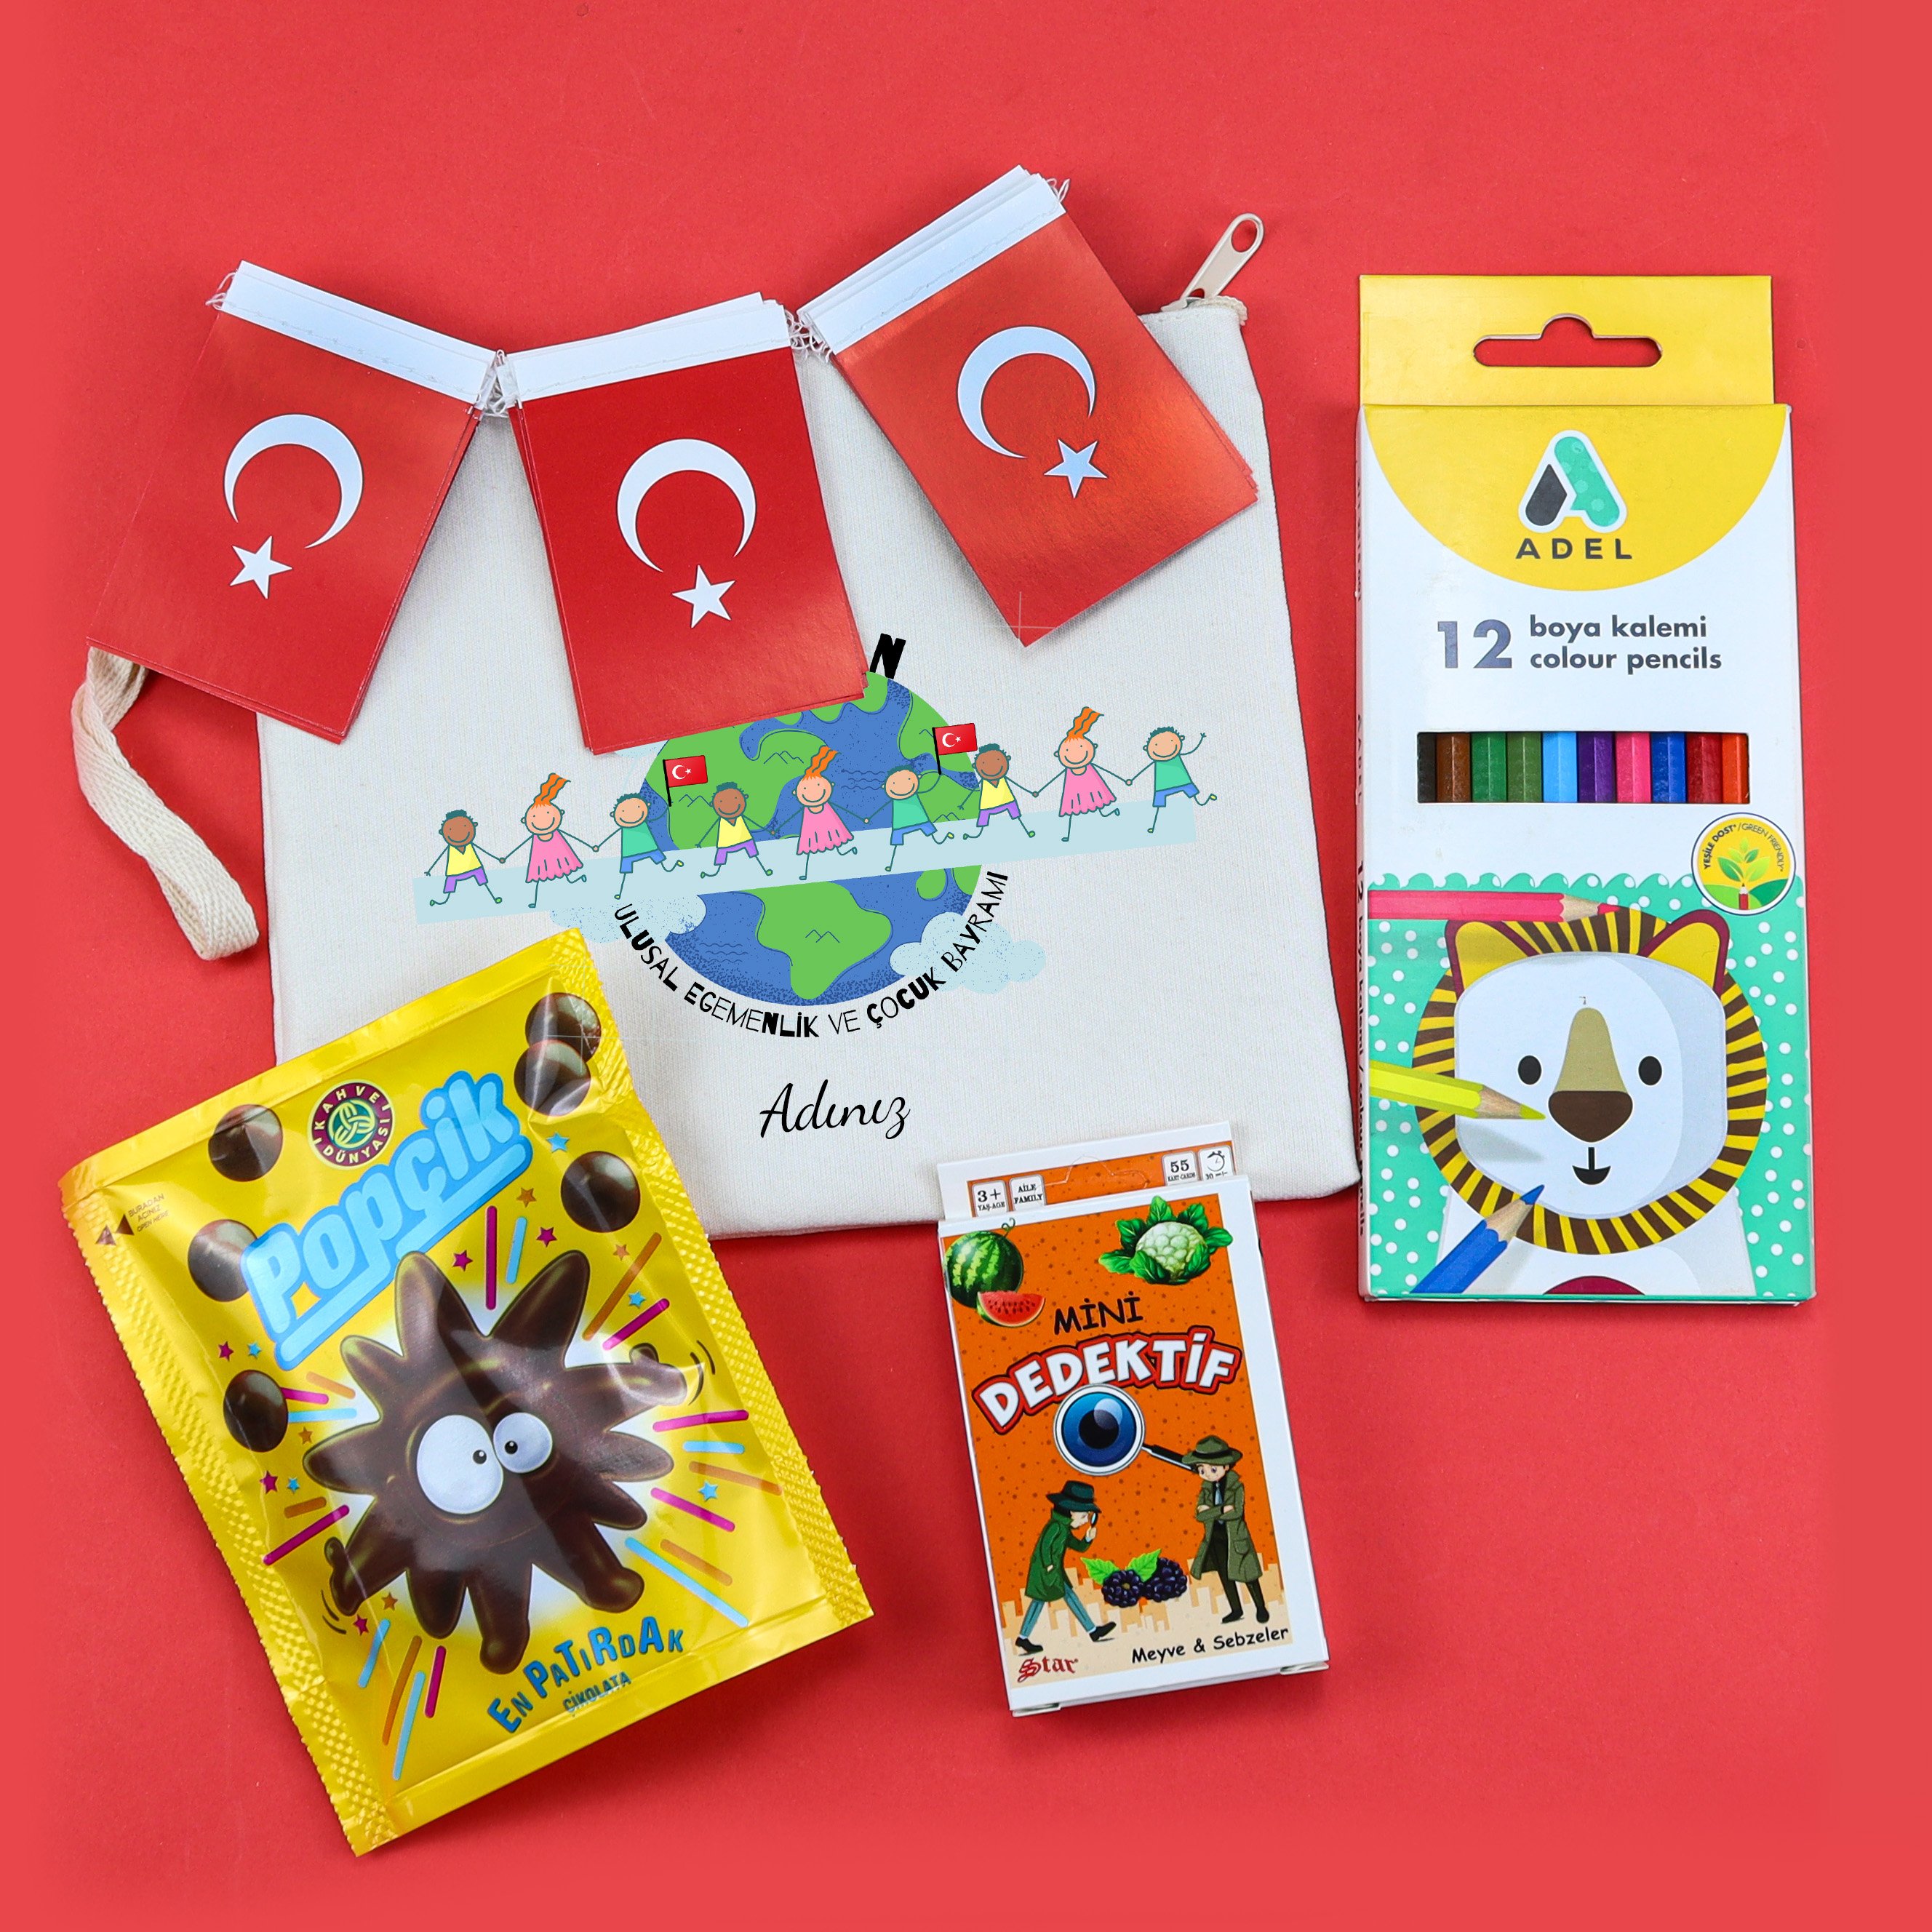 Kişiye Özel 23 Nisan Tasarımlı Bez El Çantası & Adel 12'li Boya Kalemi & Mini Dedektif Kart Oyunu & Popçik Çikolata & Asma Türk Bayrağı Hediye Seti